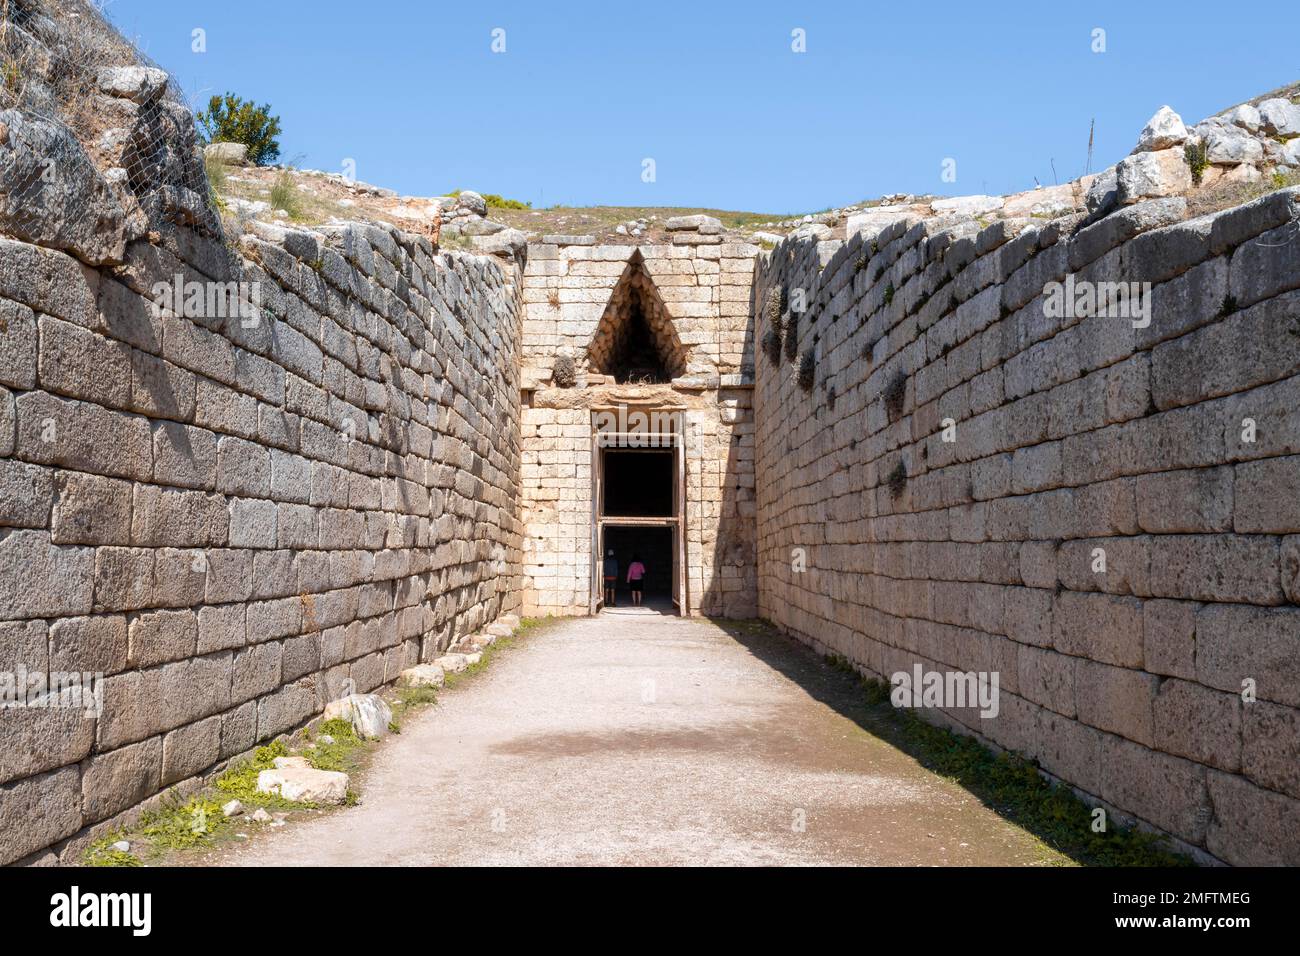 Tomba di Tholos, Tomba di Aigisto, periodo tardo elladico, Micene, Sito archeologico greco, Peloponneso, Grecia Foto Stock